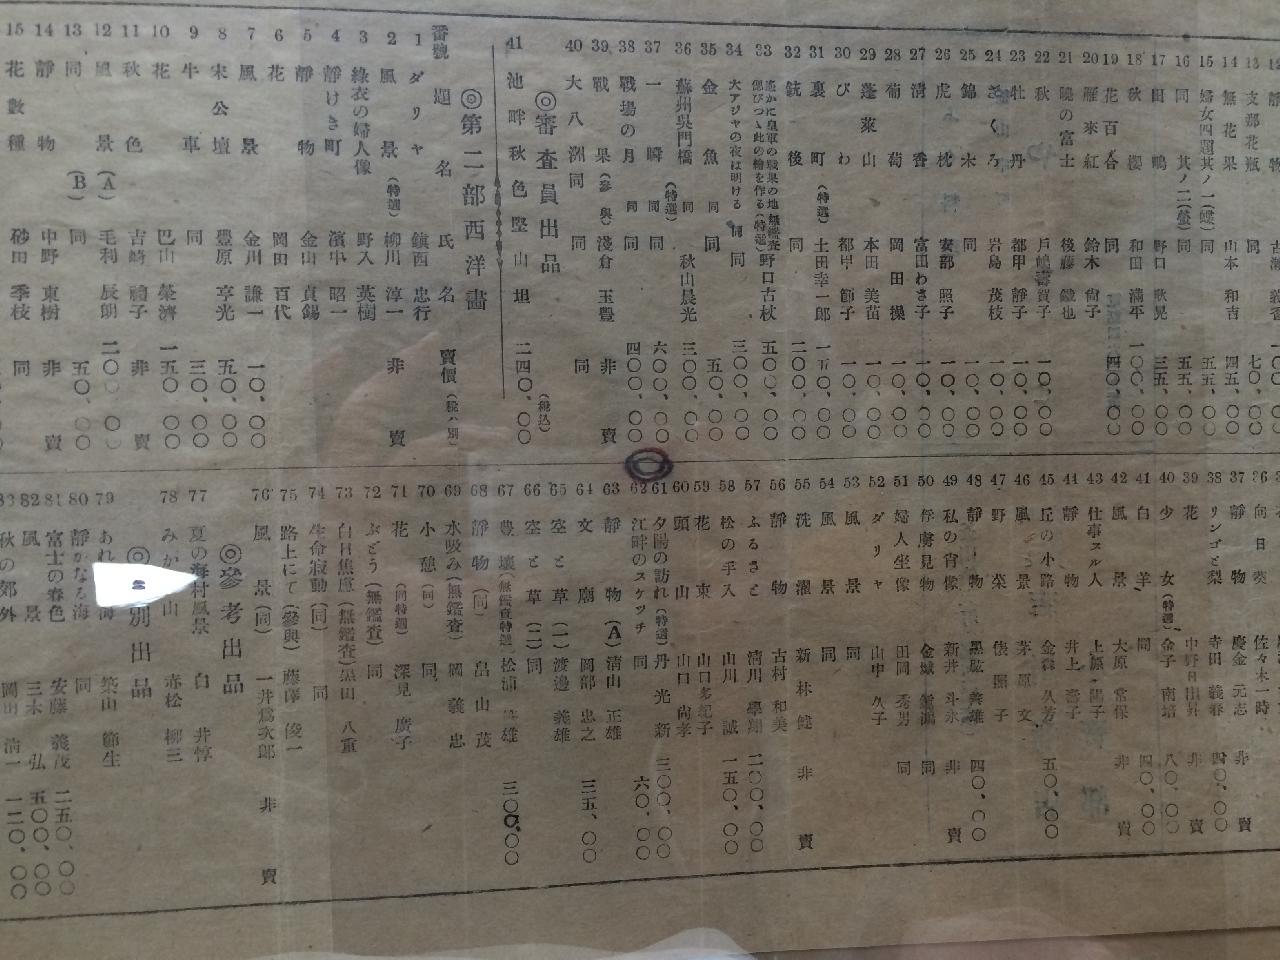 1942년 제12회 부산미술전람회 출품목록